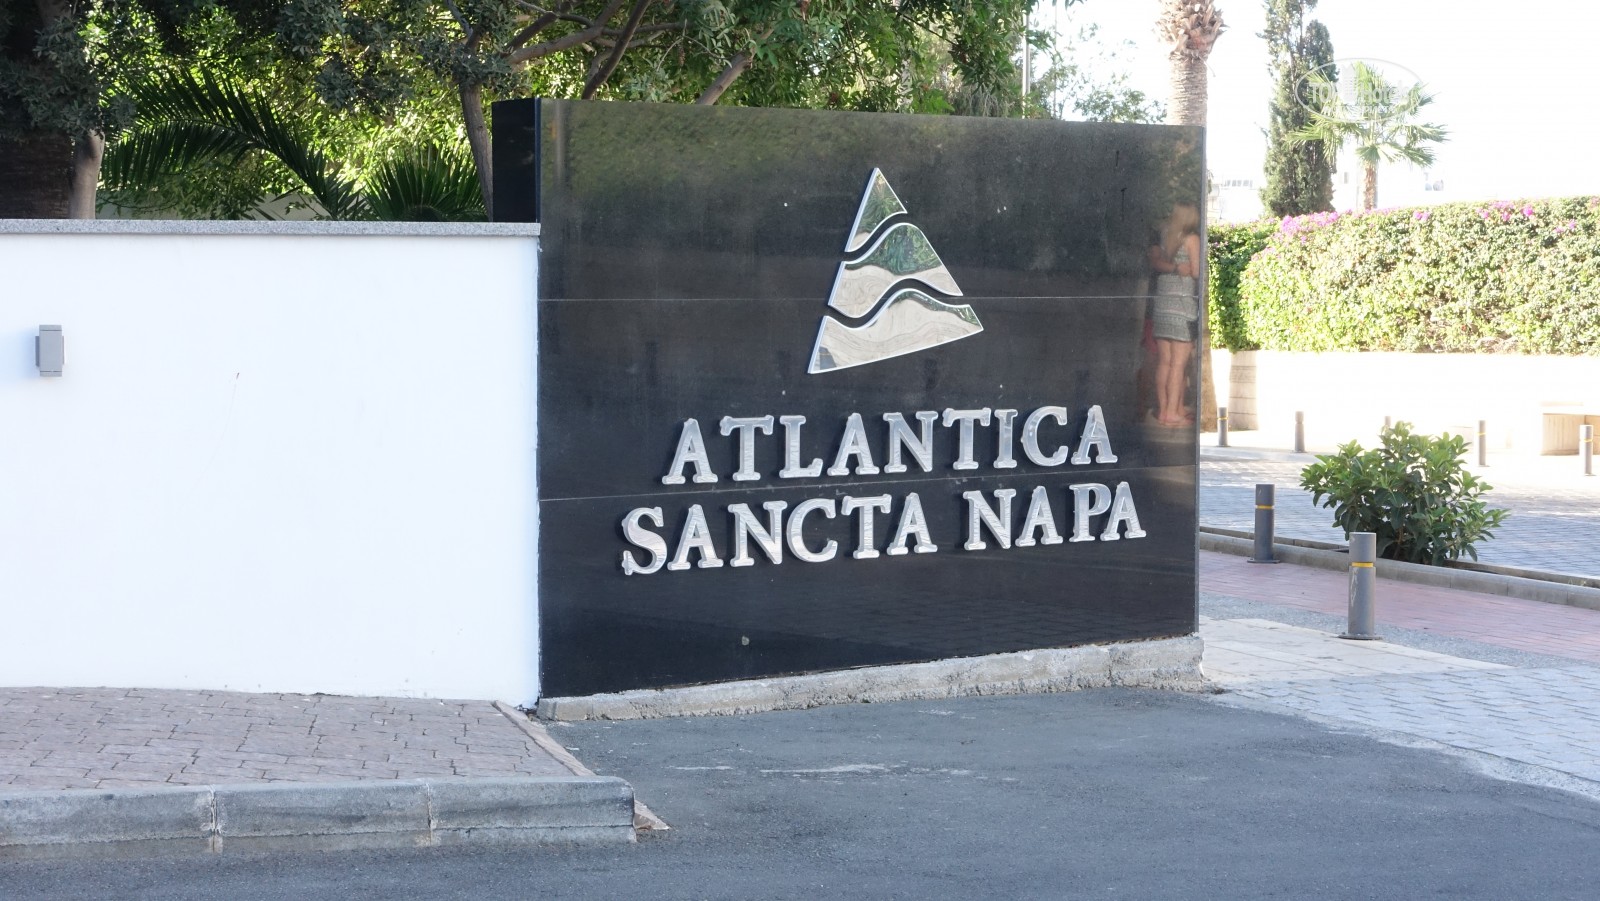 Atlantica Sancta Napa Кипр цены